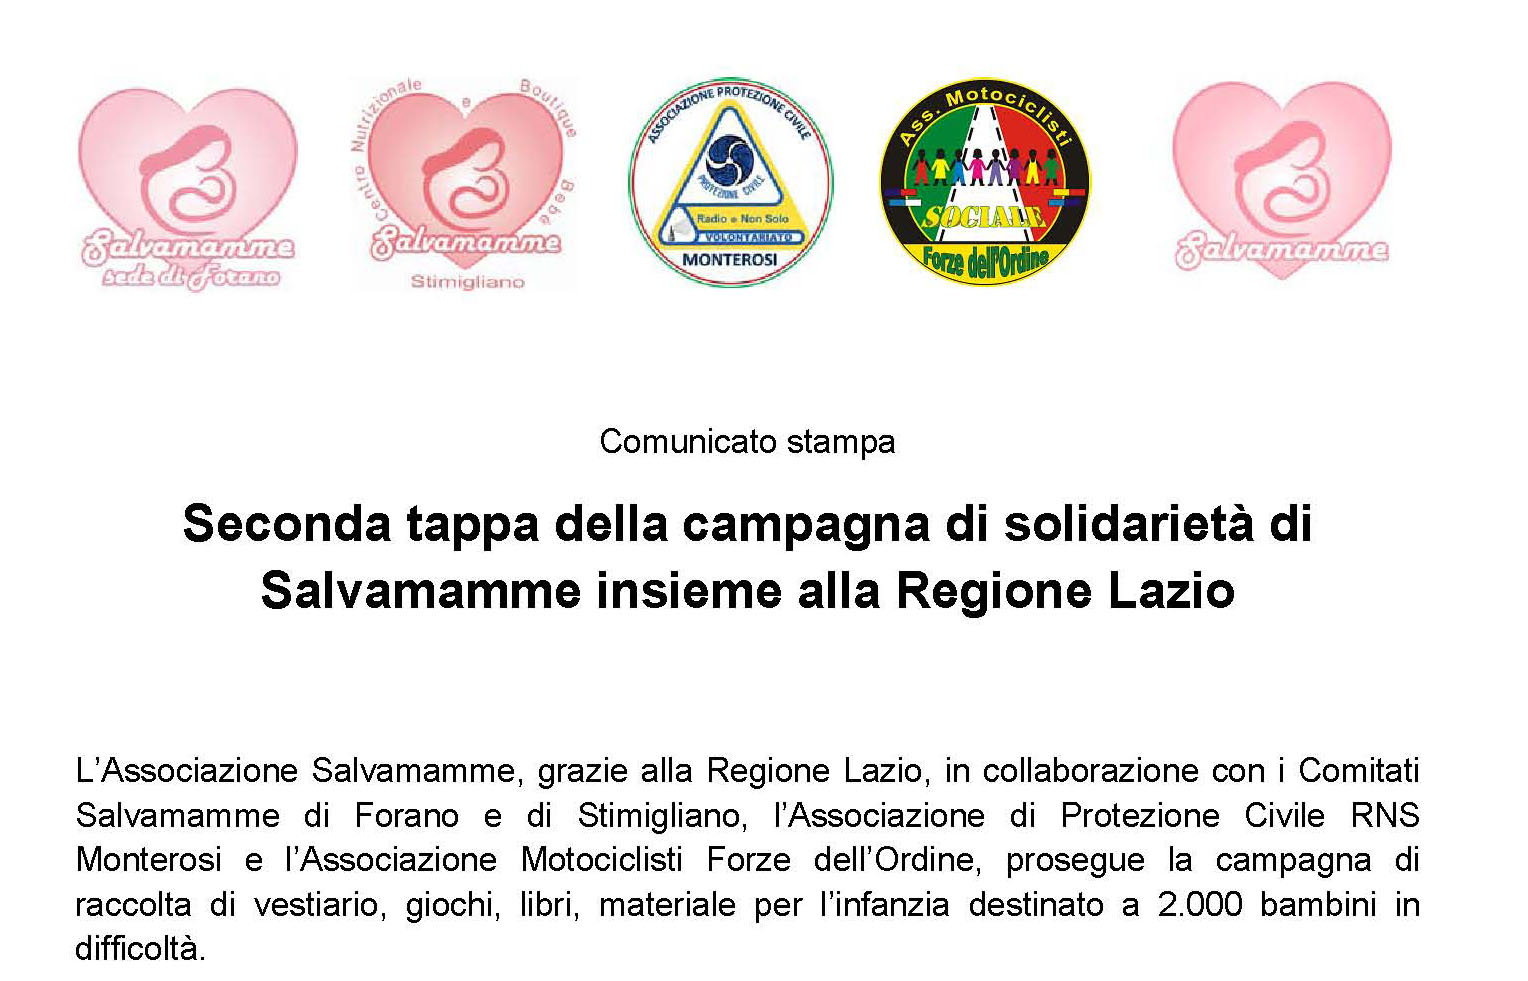 Seconda tappa della campagna di solidarietà di Salvamamme insieme alla Regione Lazio